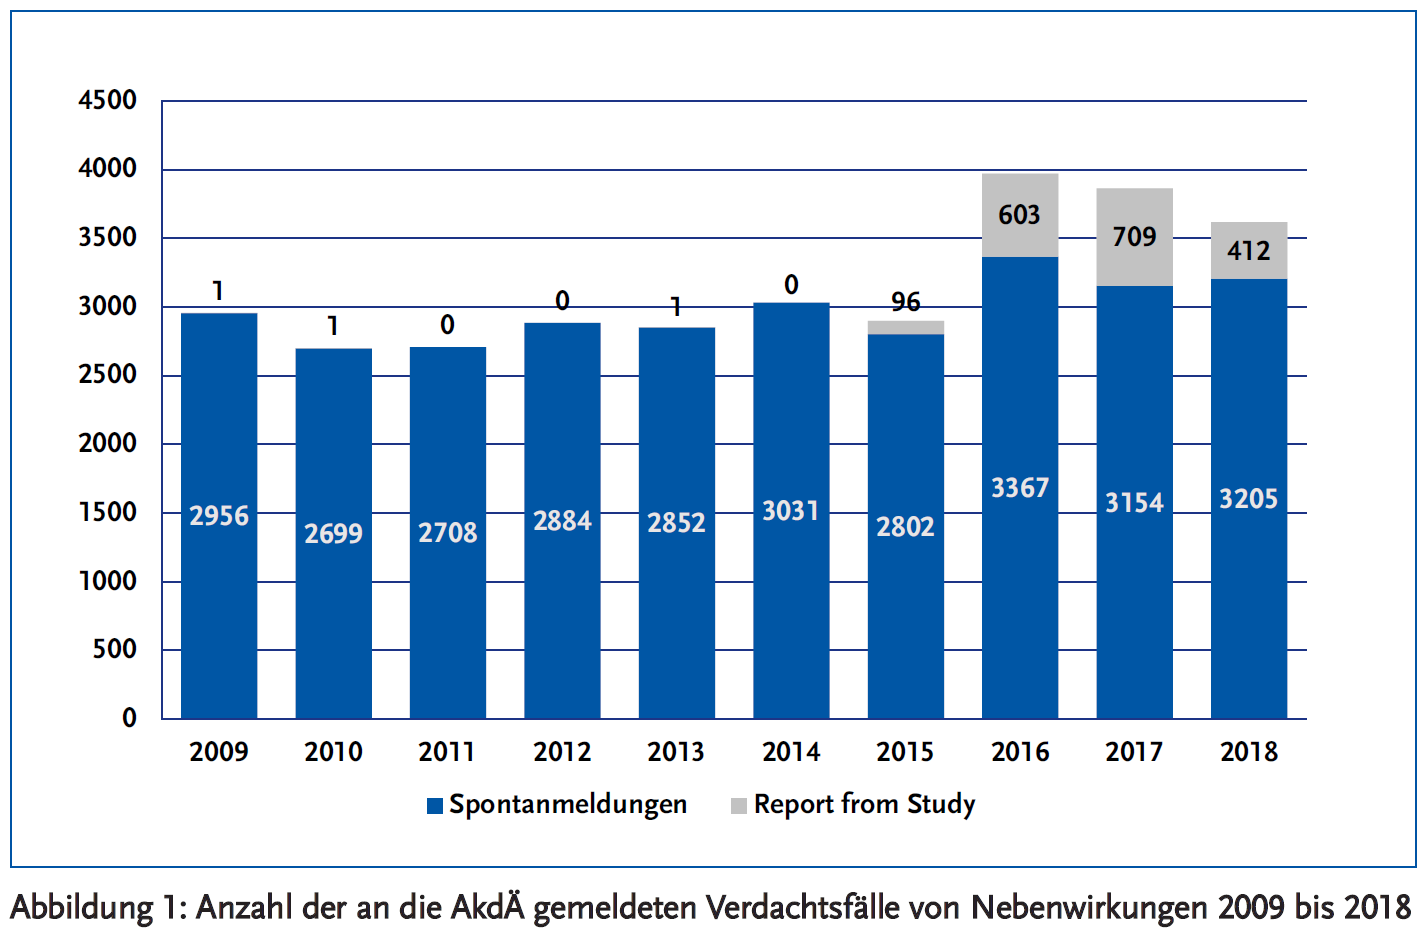 Abbildung 1: Anzahl der an die AkdÄ gemeldeten Verdachtsfälle von Nebenwirkungen 2009 bis 2018